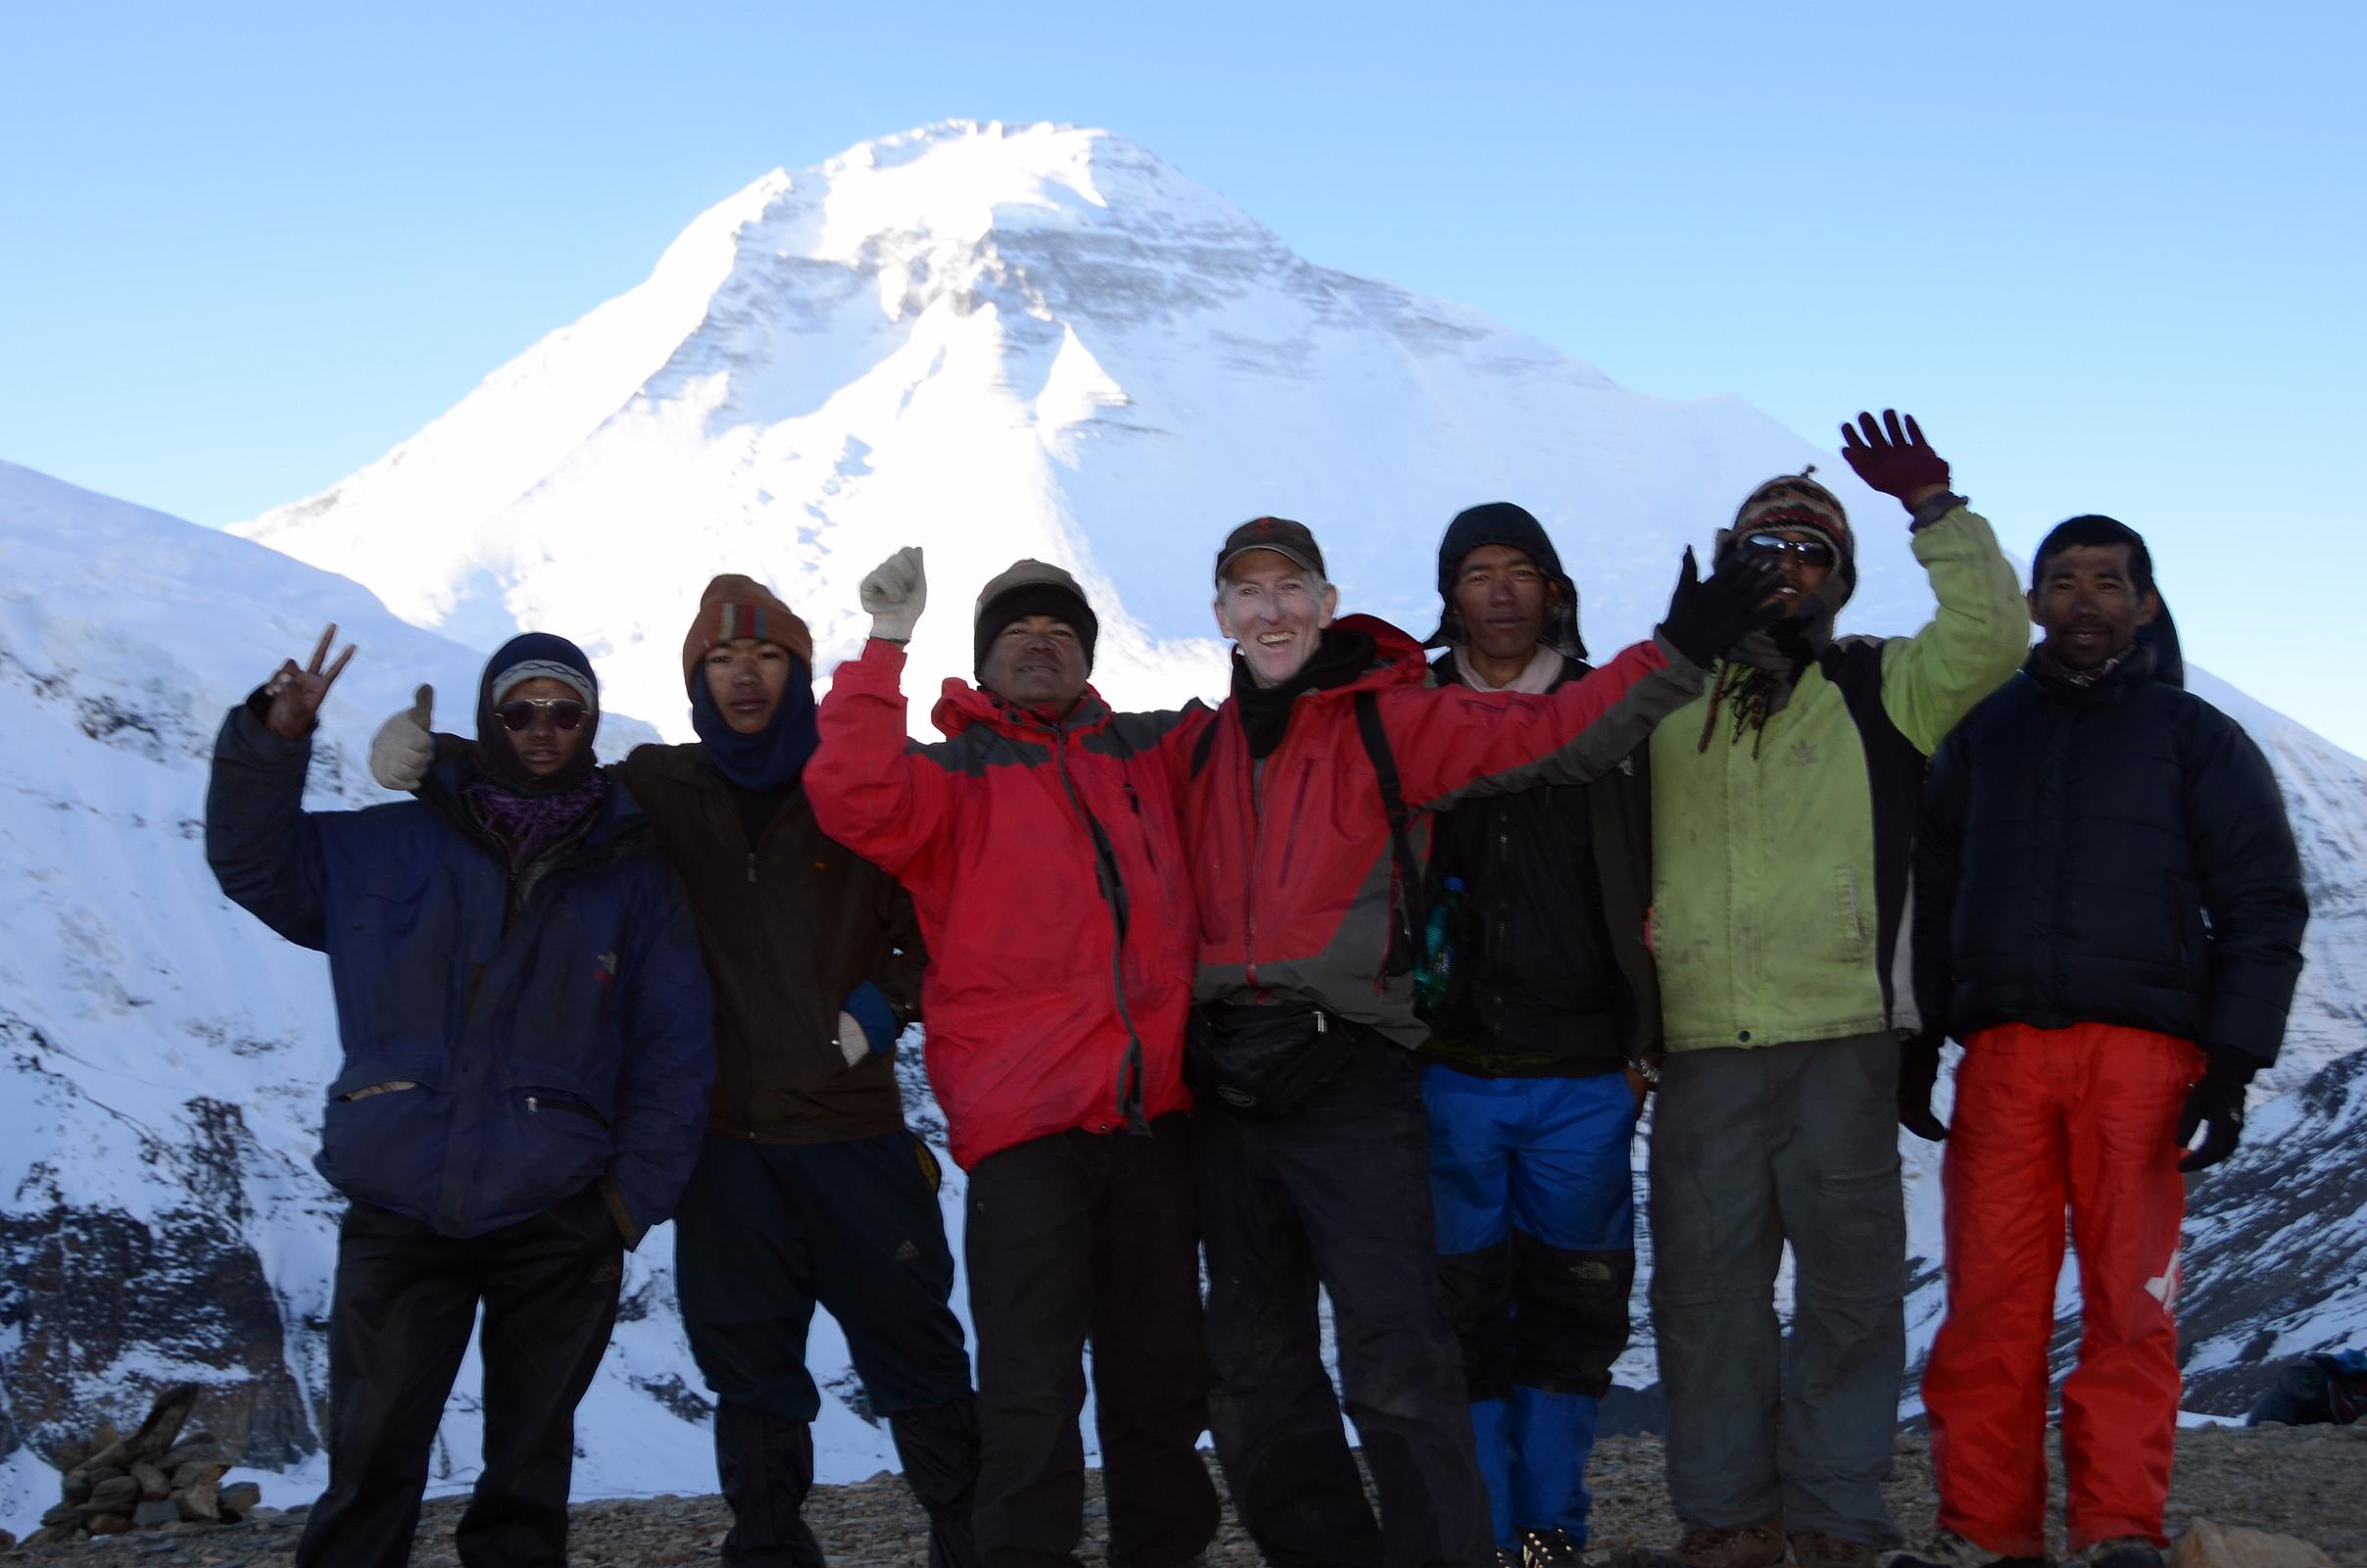 11 Cook Pemba Rinjii, Porter, Guide Gyan Tamang, Jerome Ryan, Cooks Helper Pasang, Porter, Climbing Sherpa Lal Singh Tamang On French Pass 5377m With Dhaulagiri Behind 